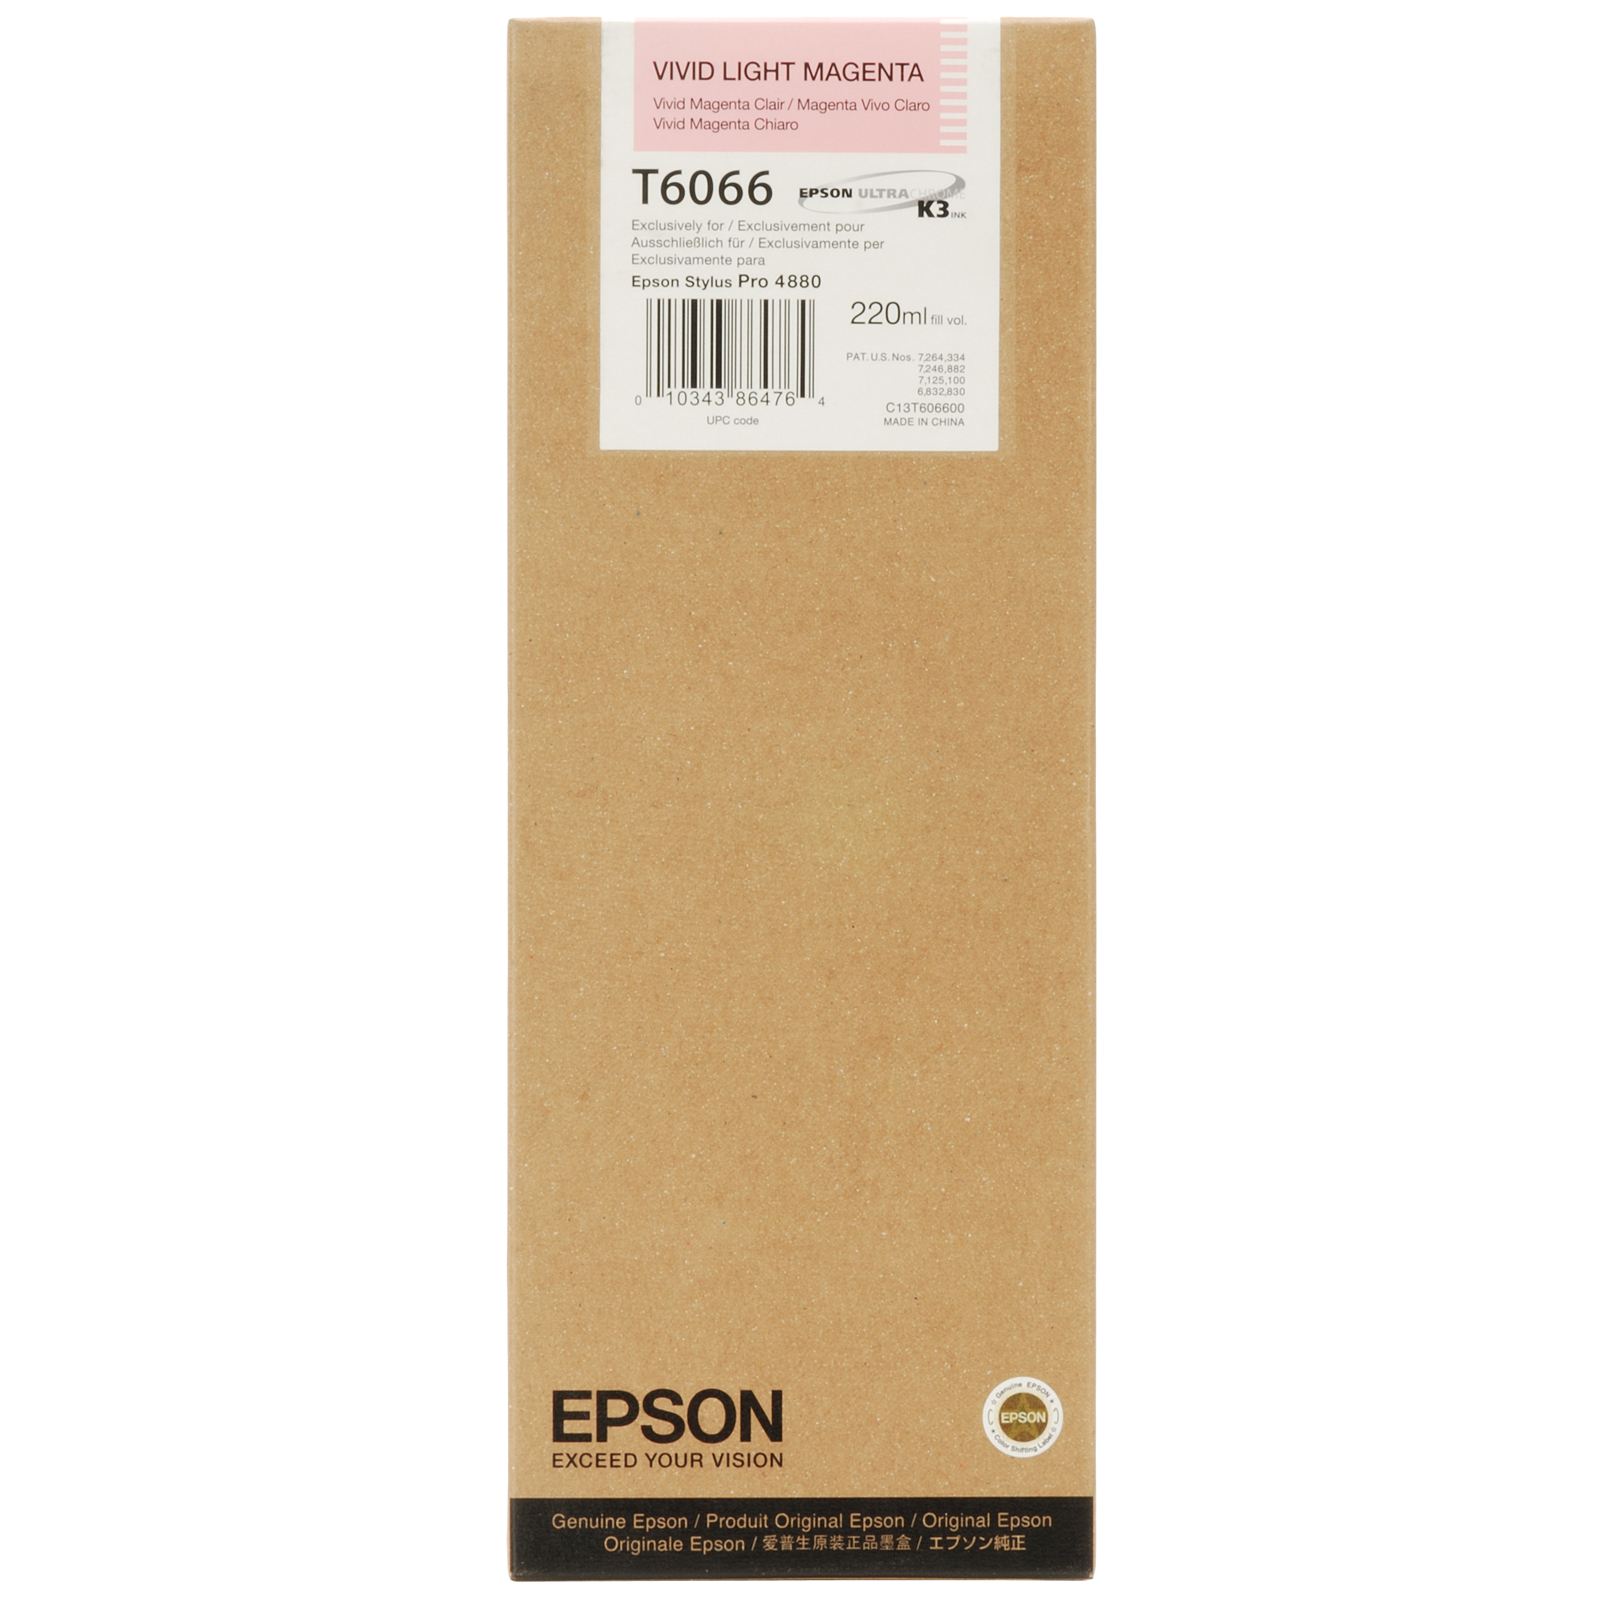 Чернильный картридж Epson для Epson Stylus Pro 4880, light magenta, 220ml